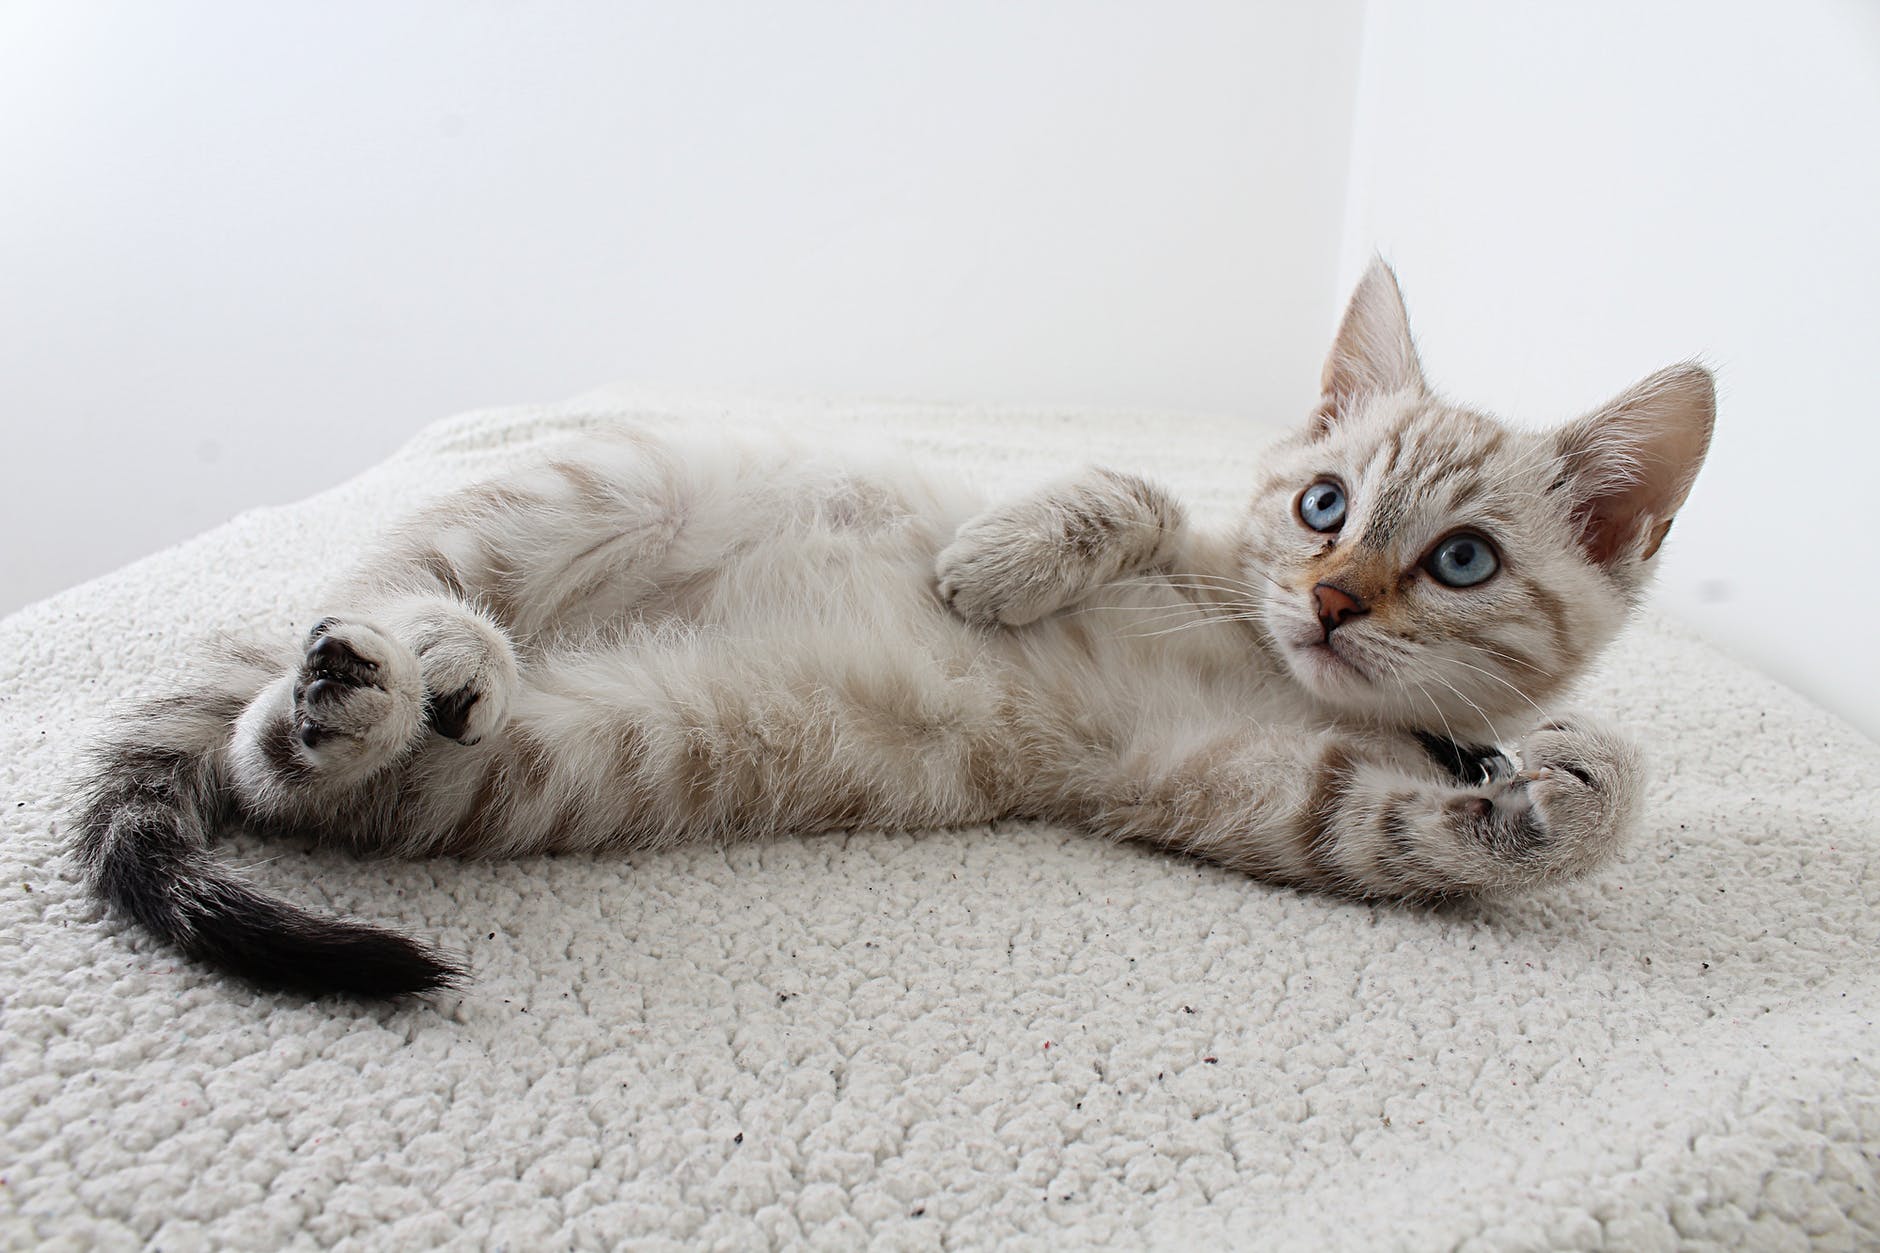 Adotar um gato: tudo o que você precisa saber - Blog AZ Petshop - Dicas  para cuidar do seu pet!